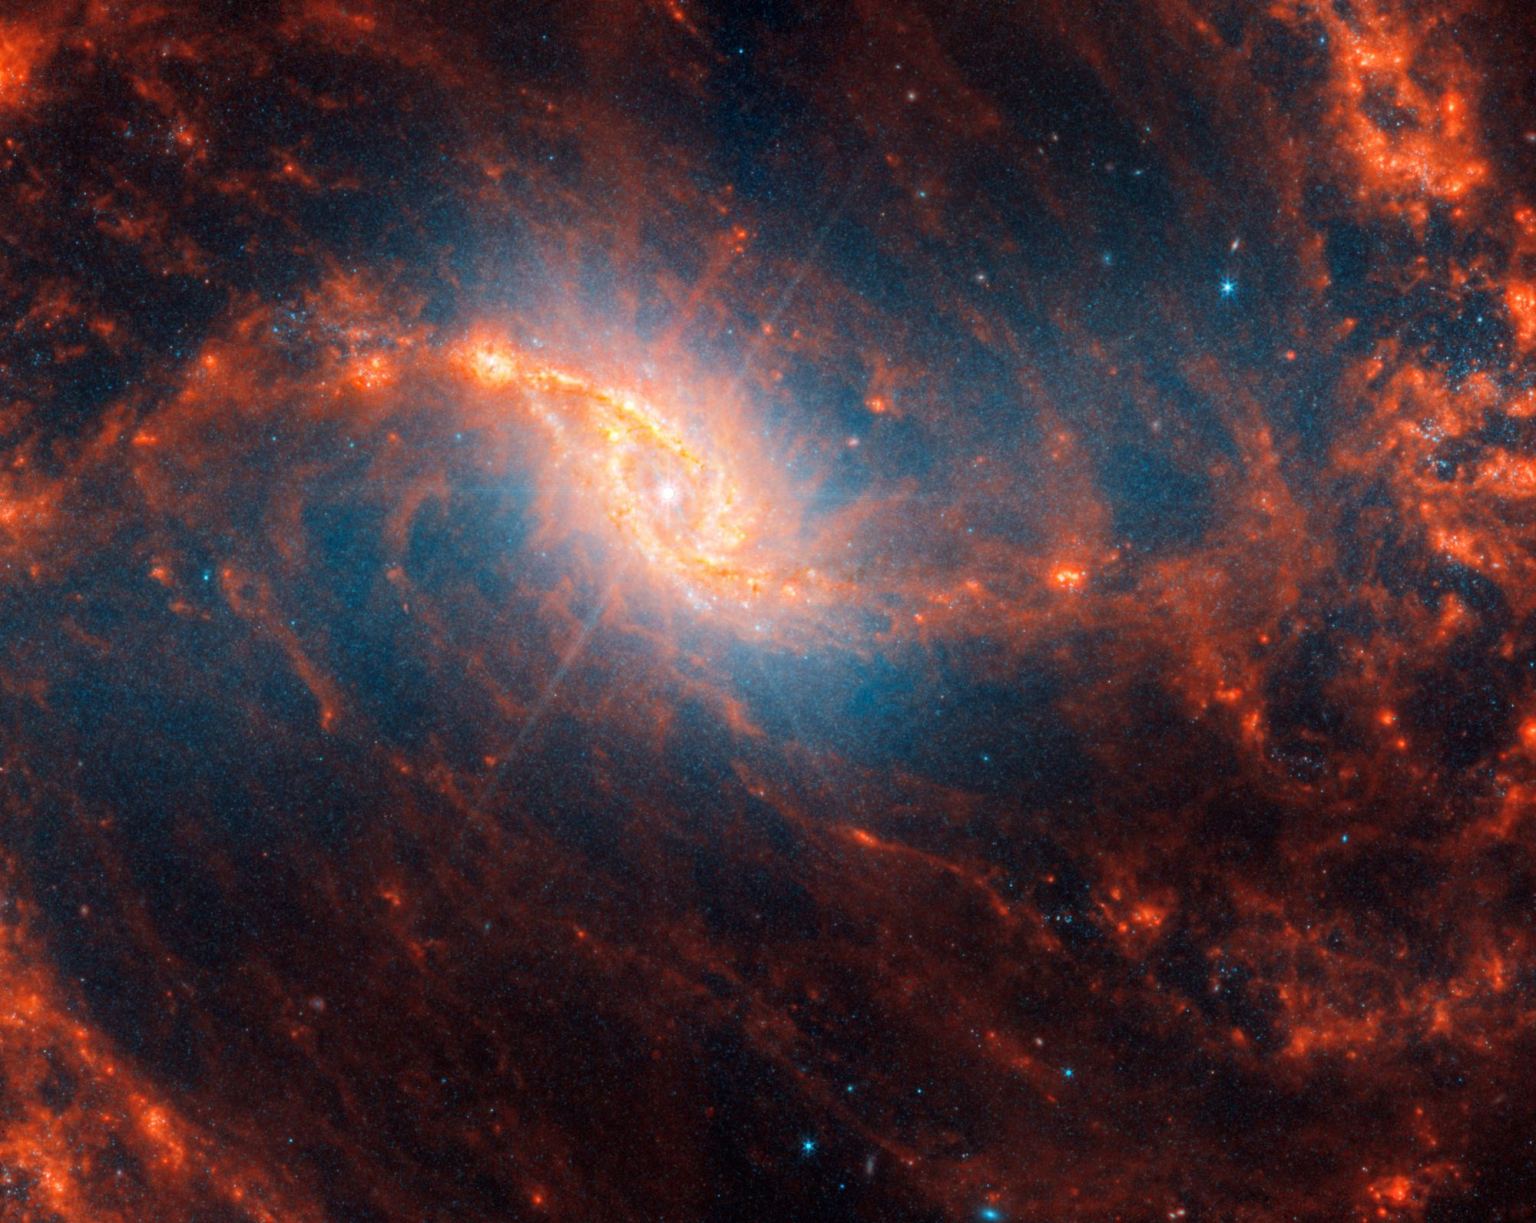 Dettaglio centrale della galassia a spirale con riflesso lente come punte al centro